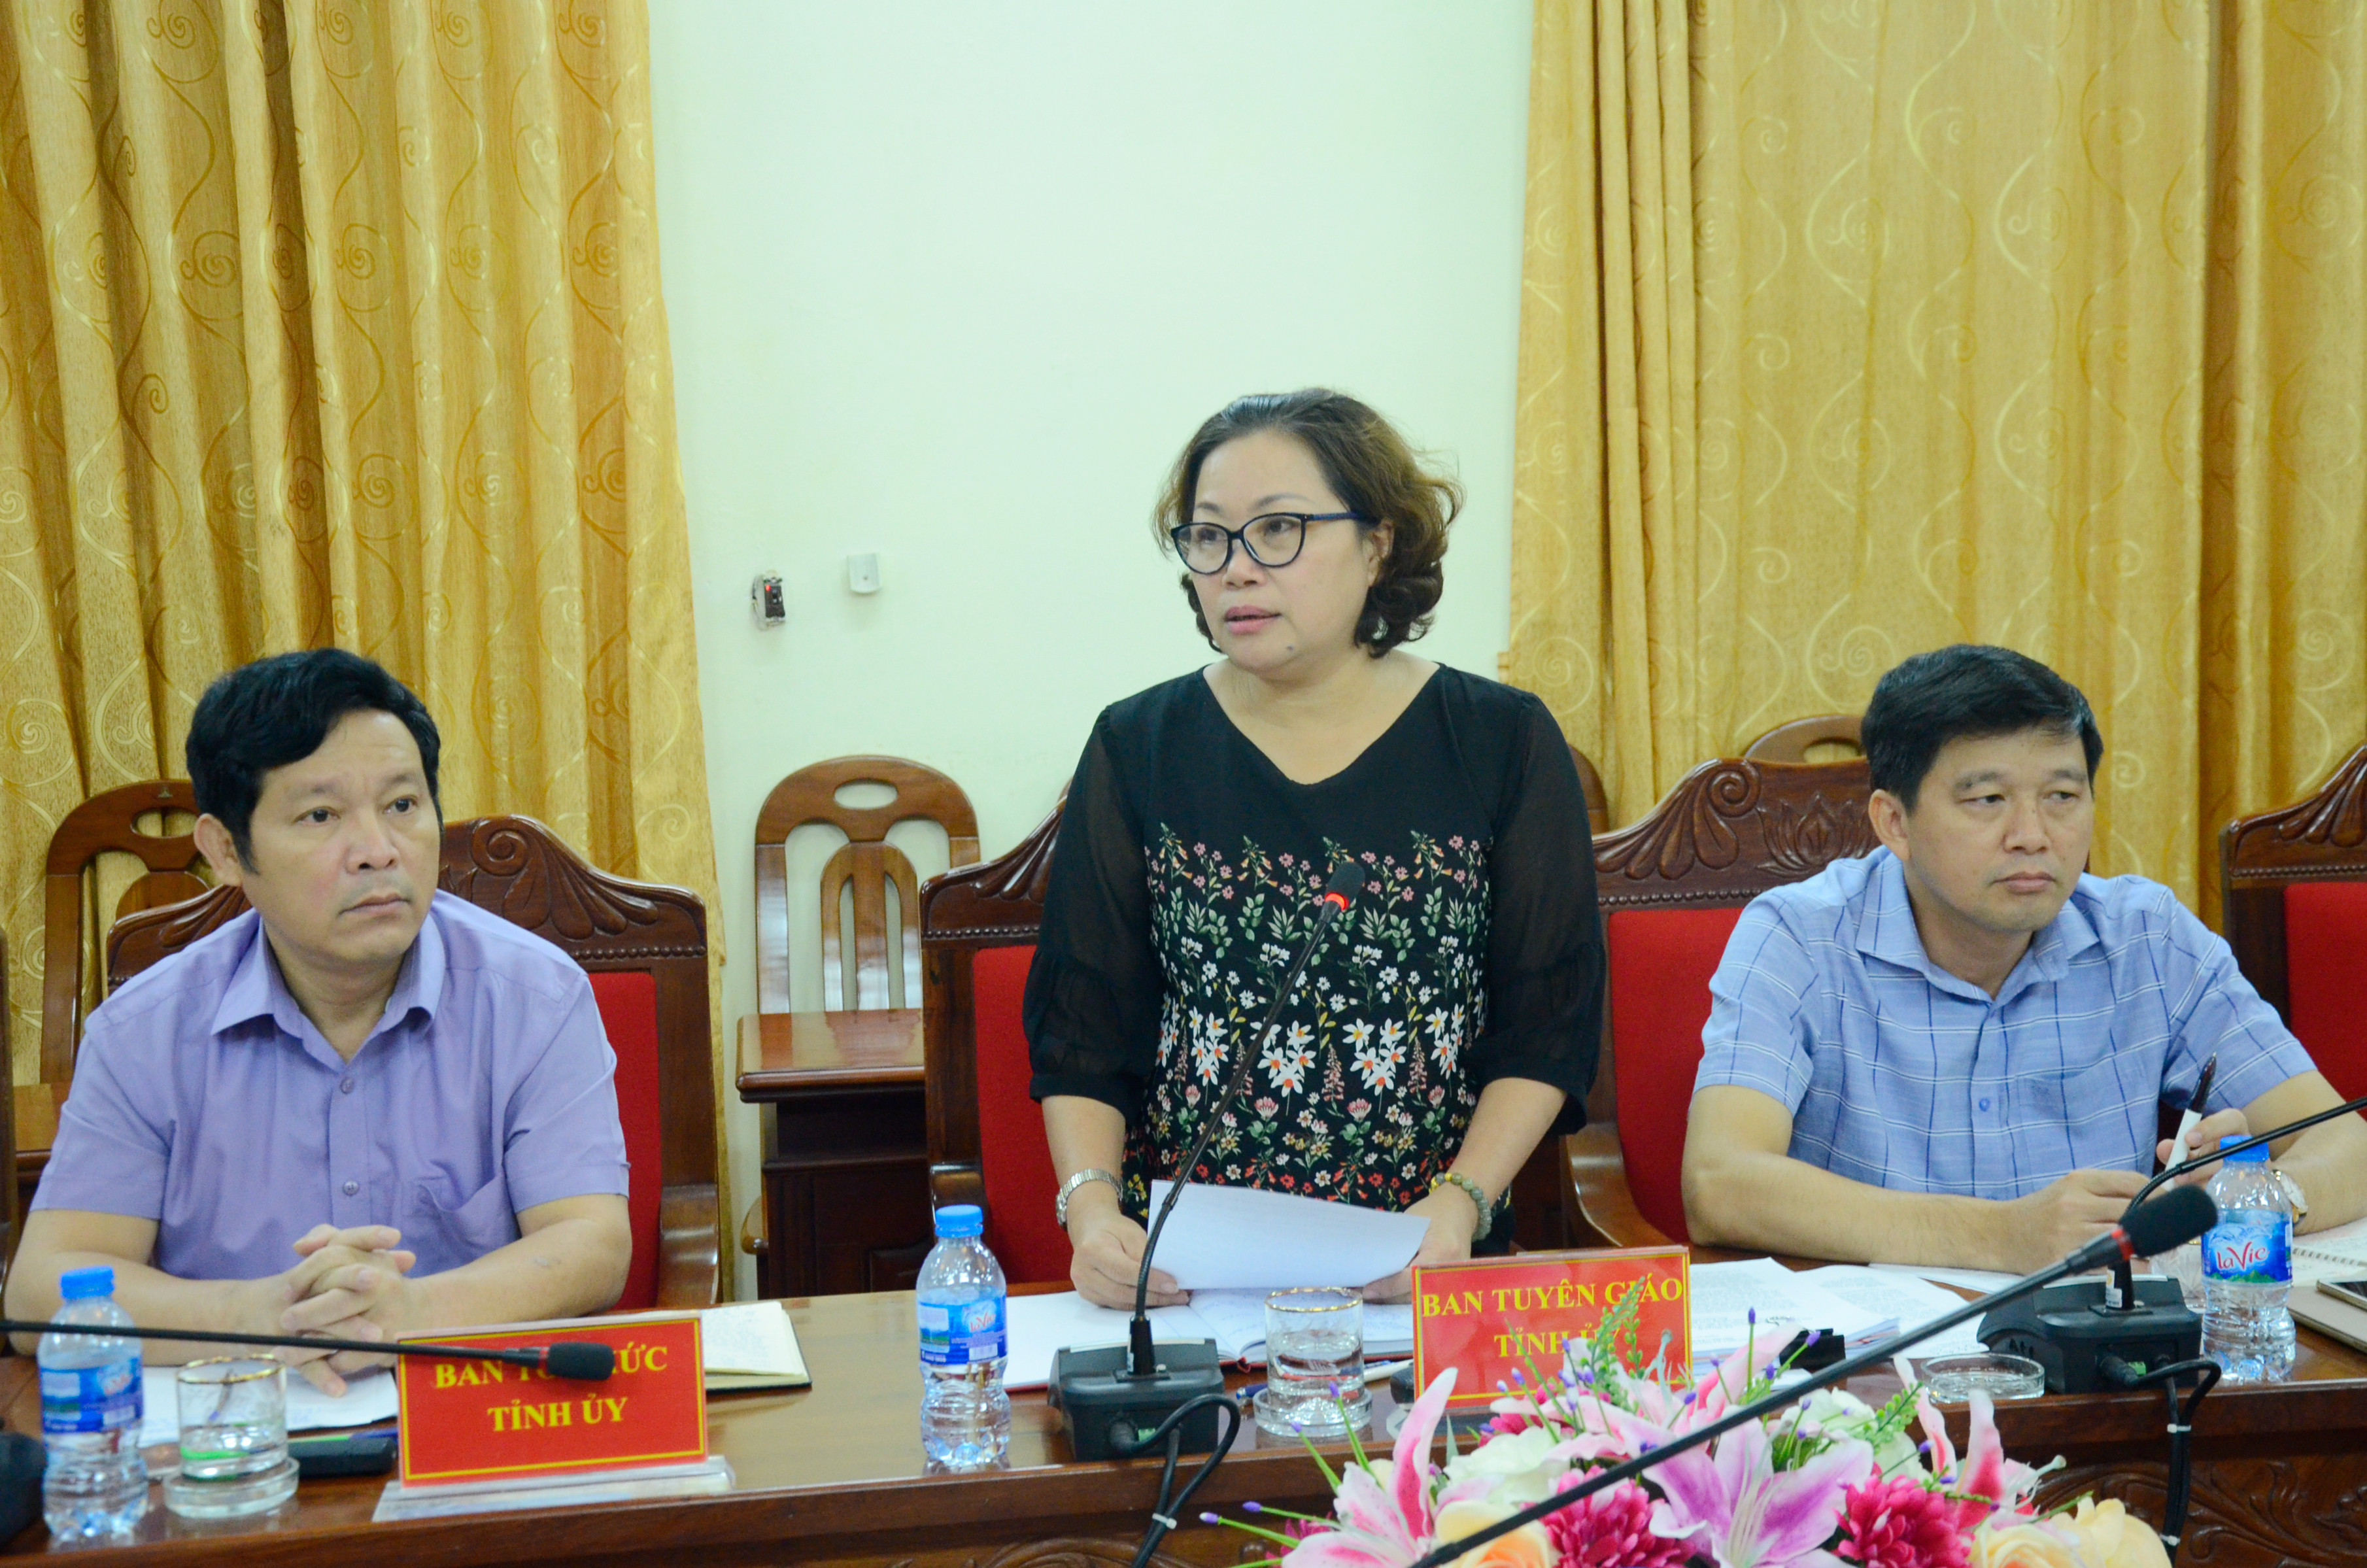 Đồng chí Nguyễn Thị Thu Hường - Ủy viên Ban Thường vụ, Trưởng Ban Tuyên giáo phát biểu. Ảnh Thanh Lê